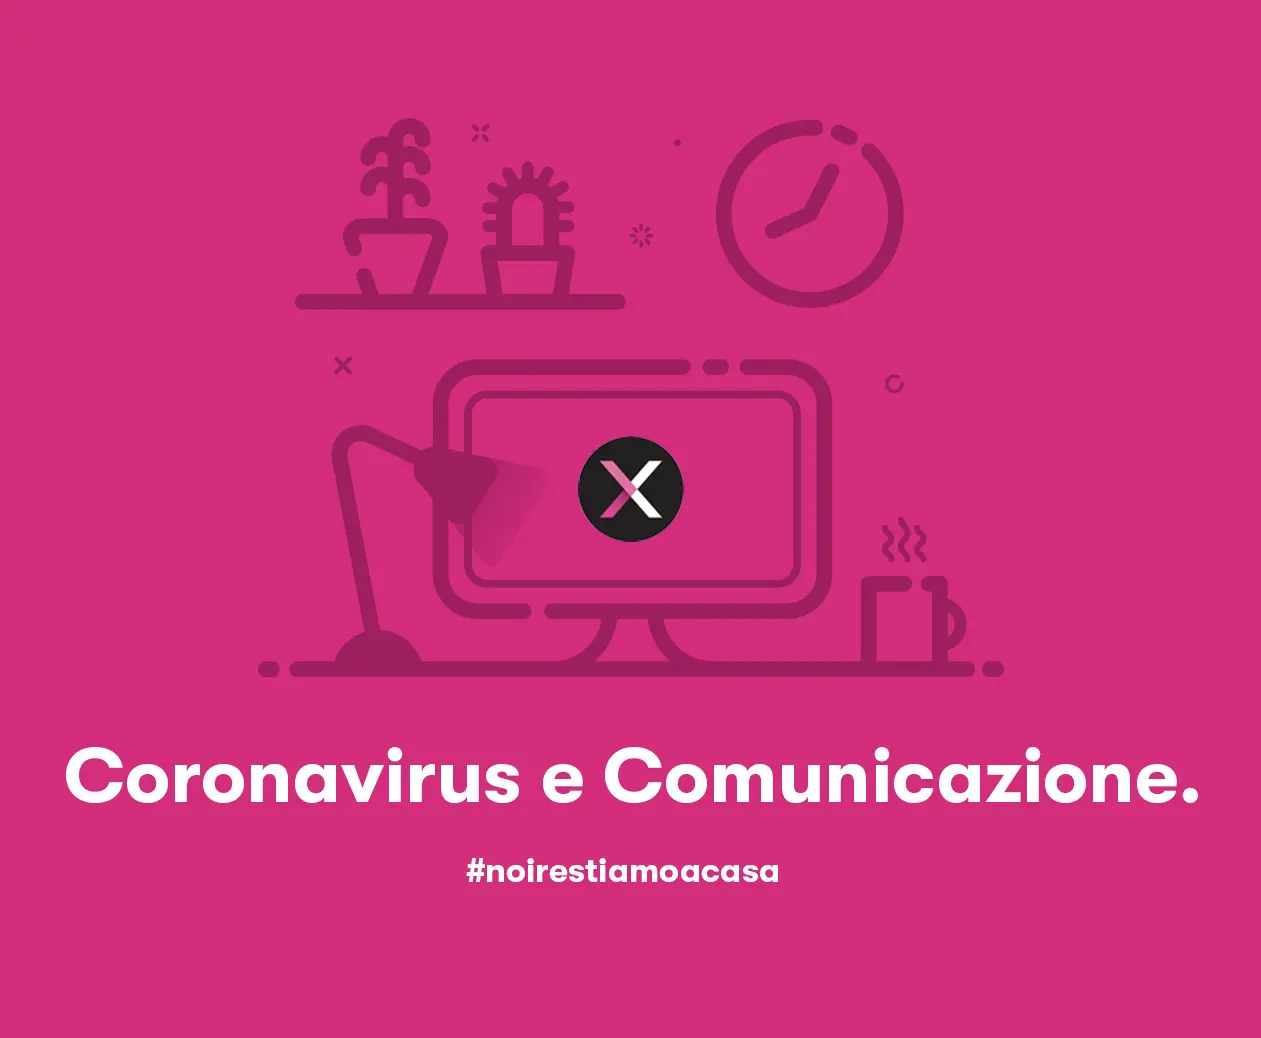 Coronavirus e comunicazione: tre riflessioni. Più una.